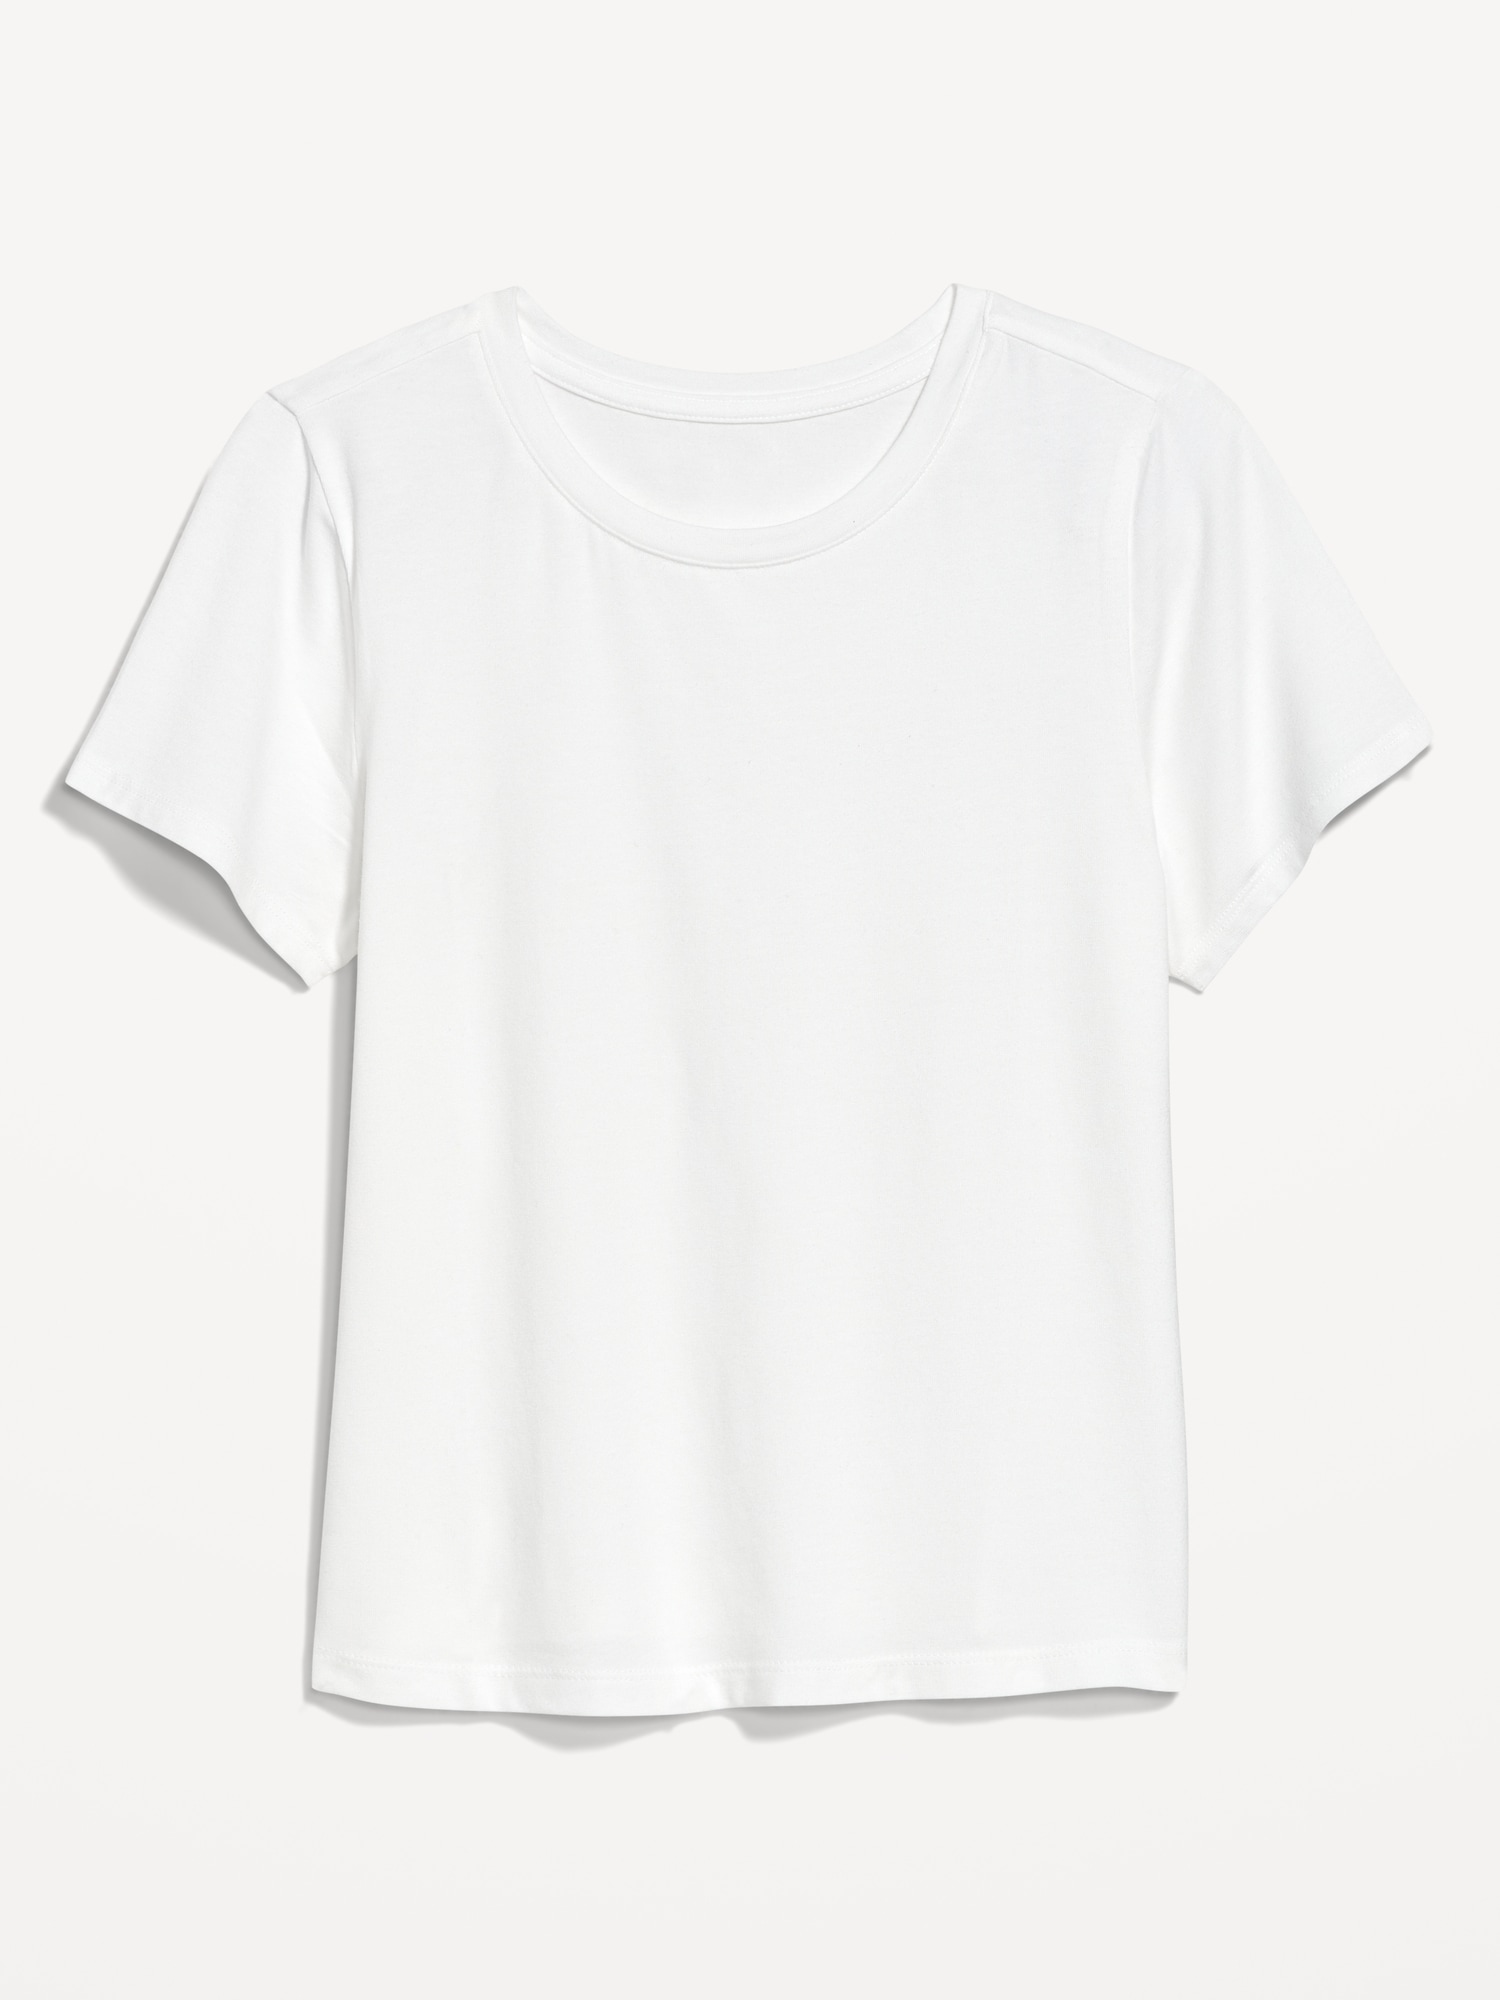 Bestee Crop T-Shirt | Old Navy